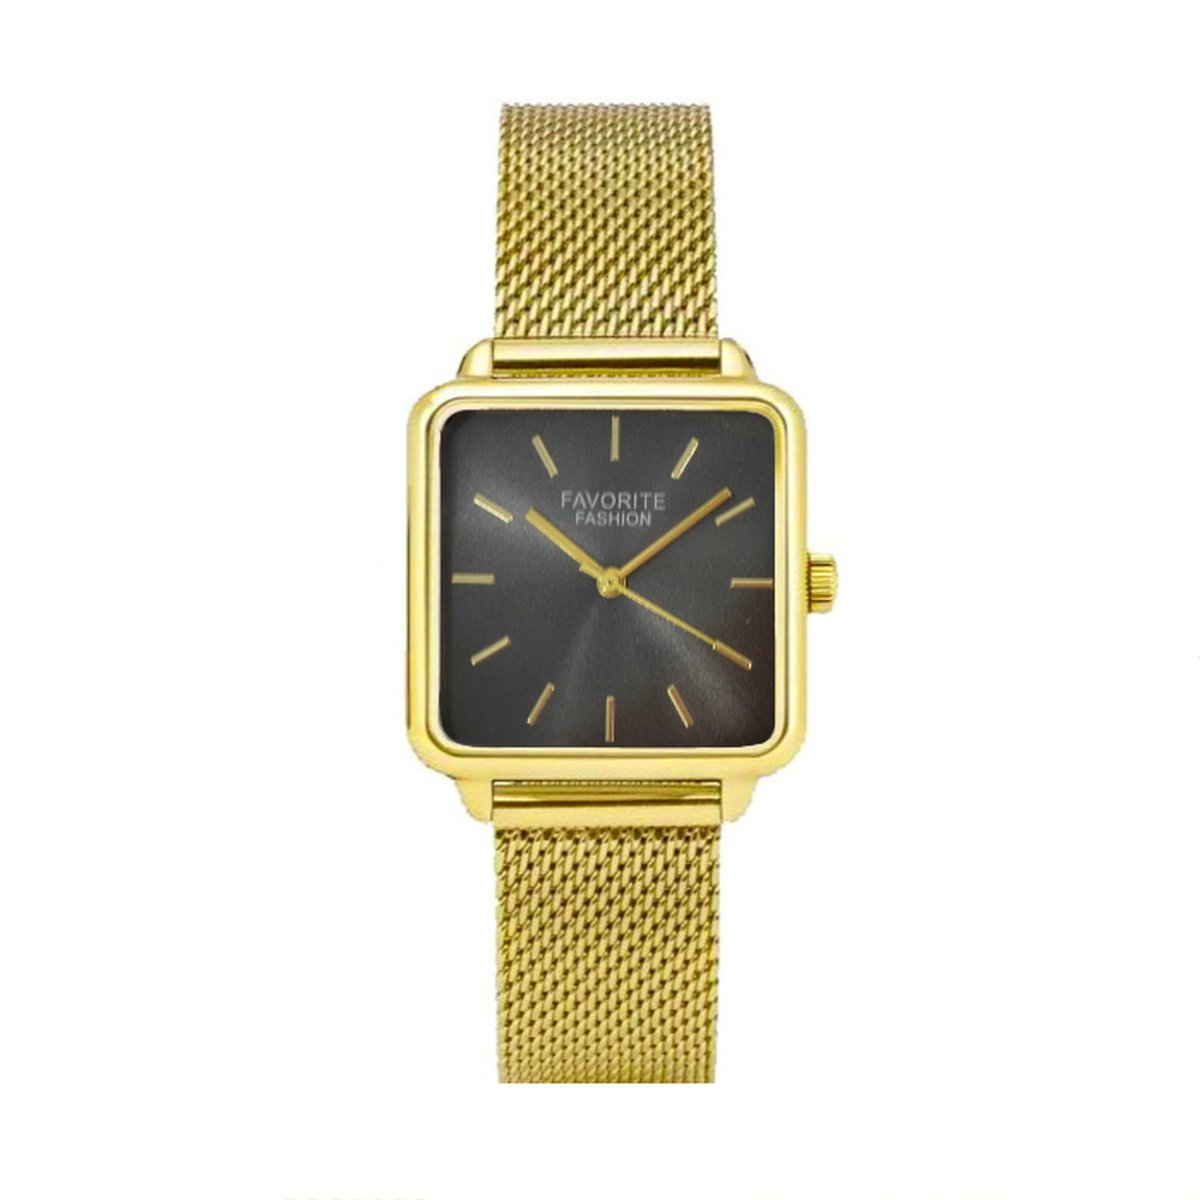 Adoree Gold - Black Mesh Horloge | Goudkleurig | Mesh Band | Ø 36 mm | Favorite Fashion